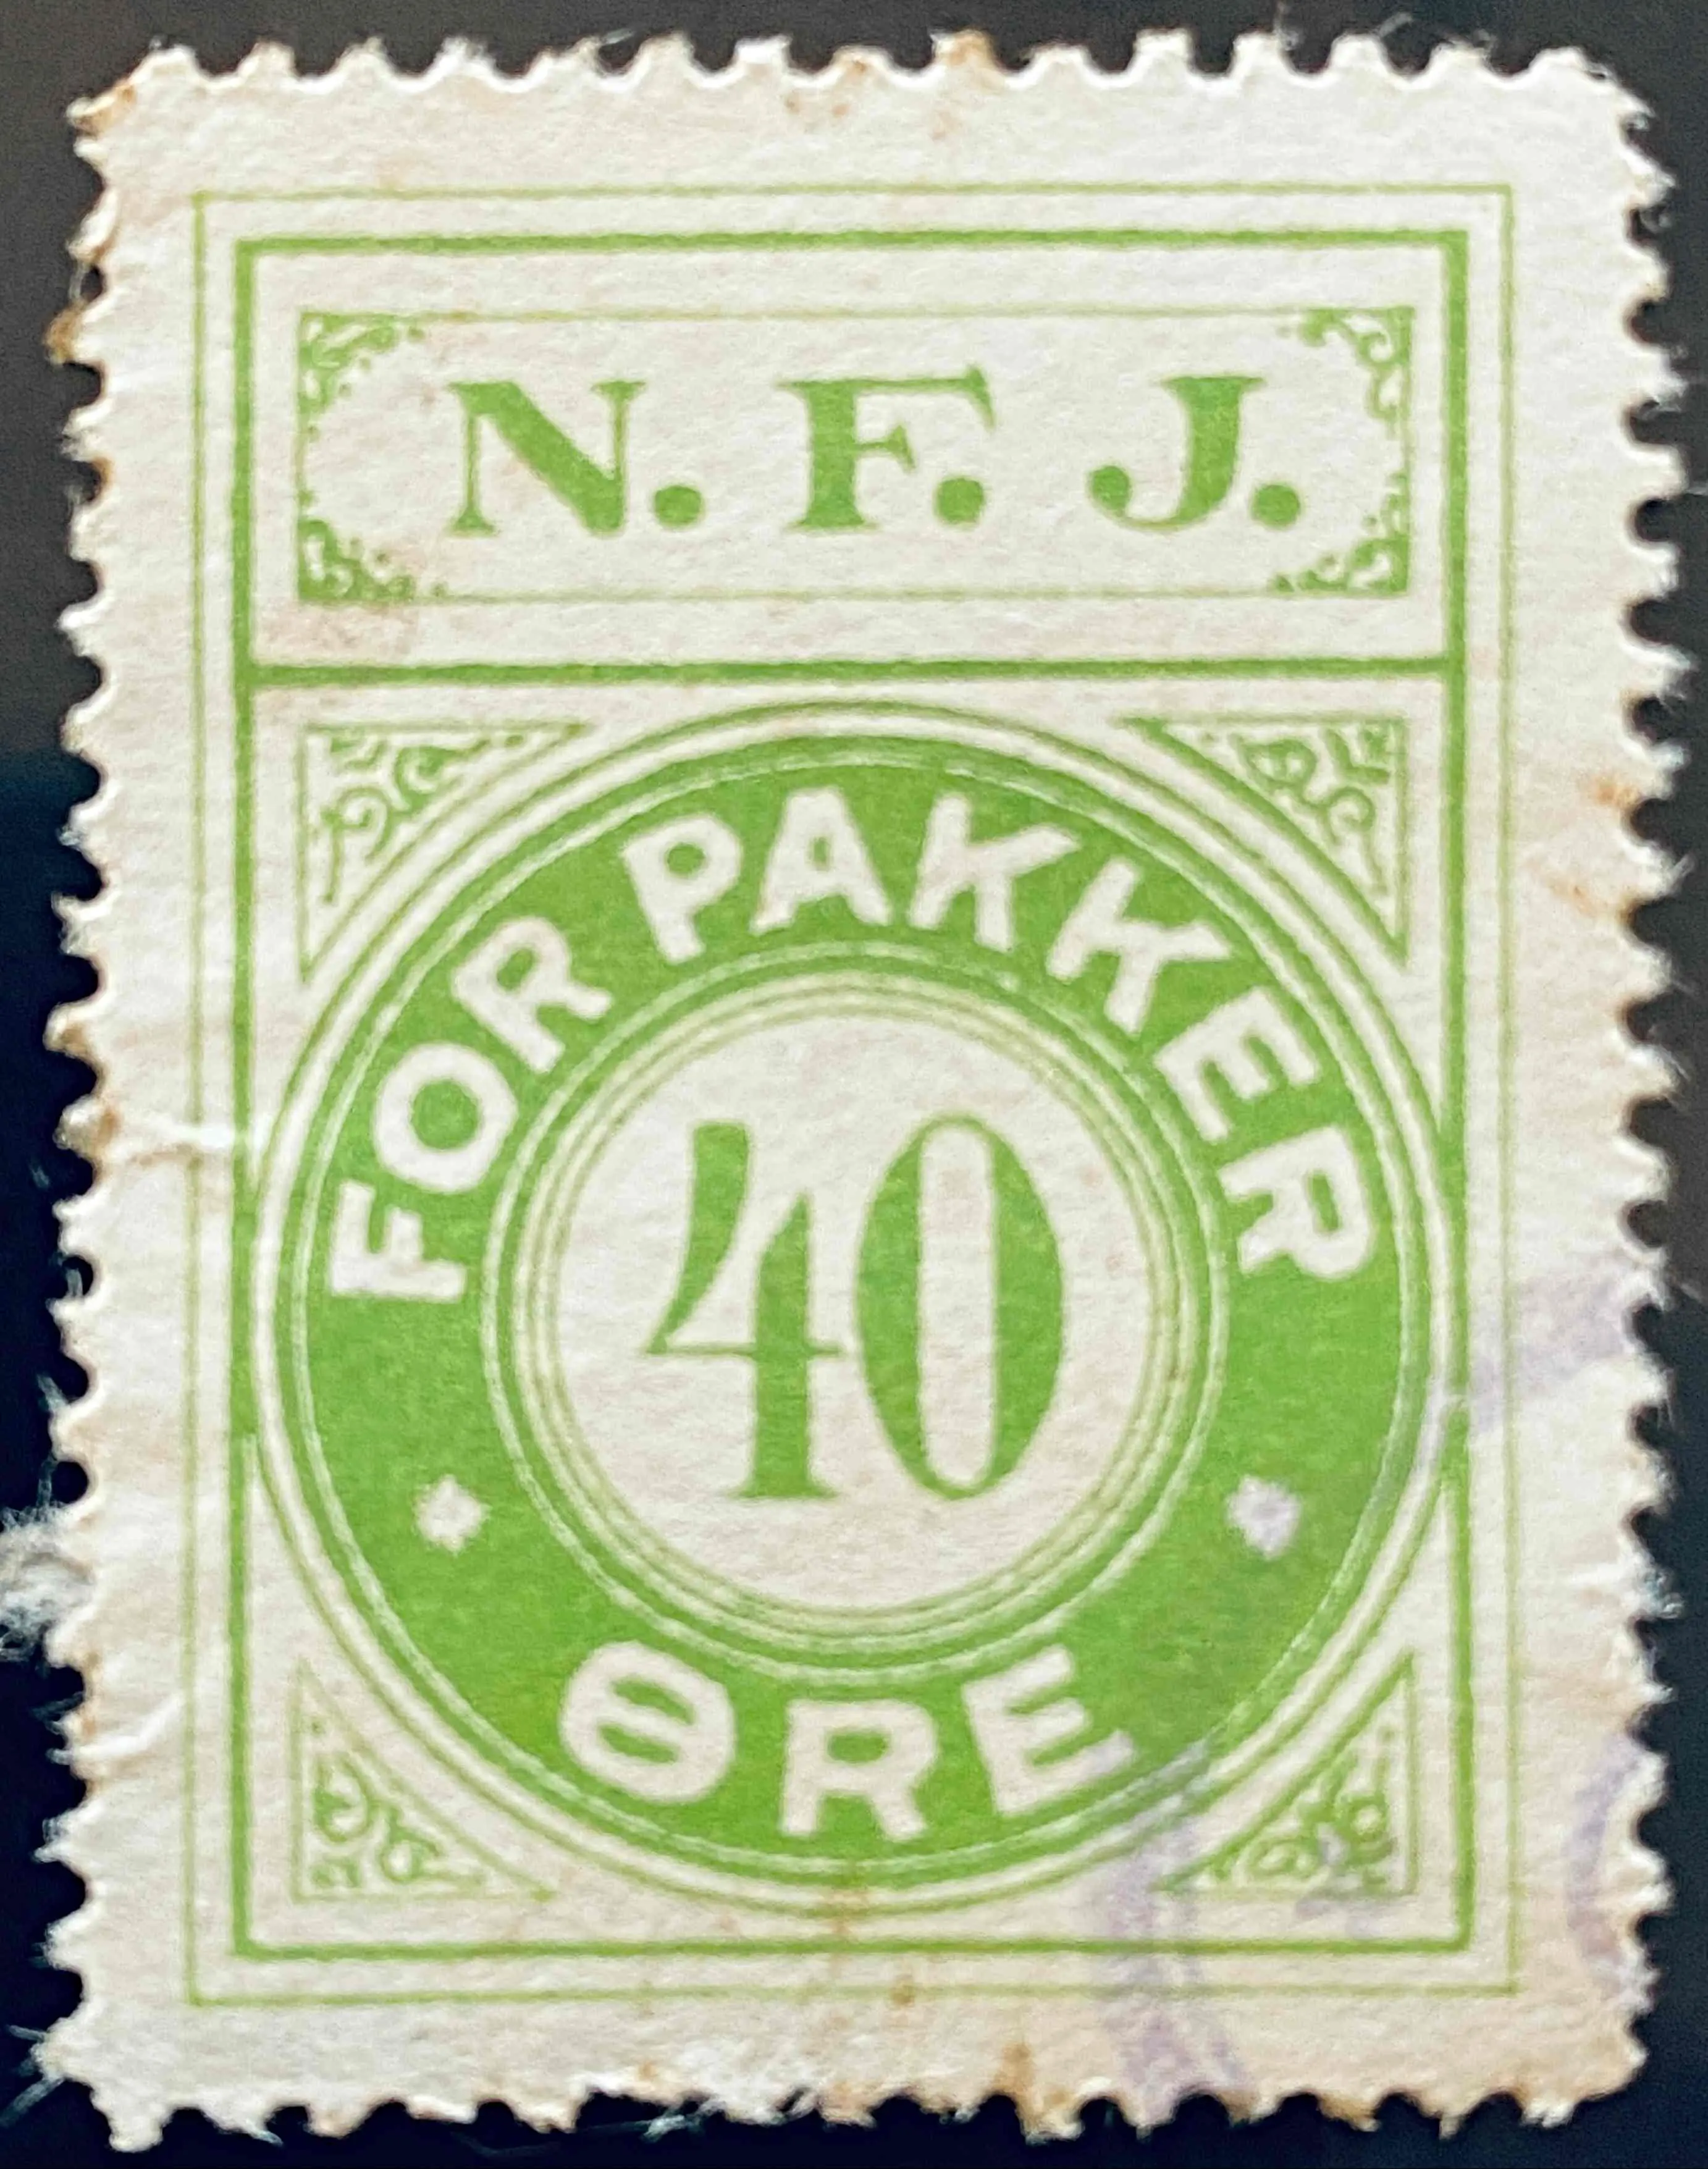 NFJ 26 - 40 Øre - Grøn.